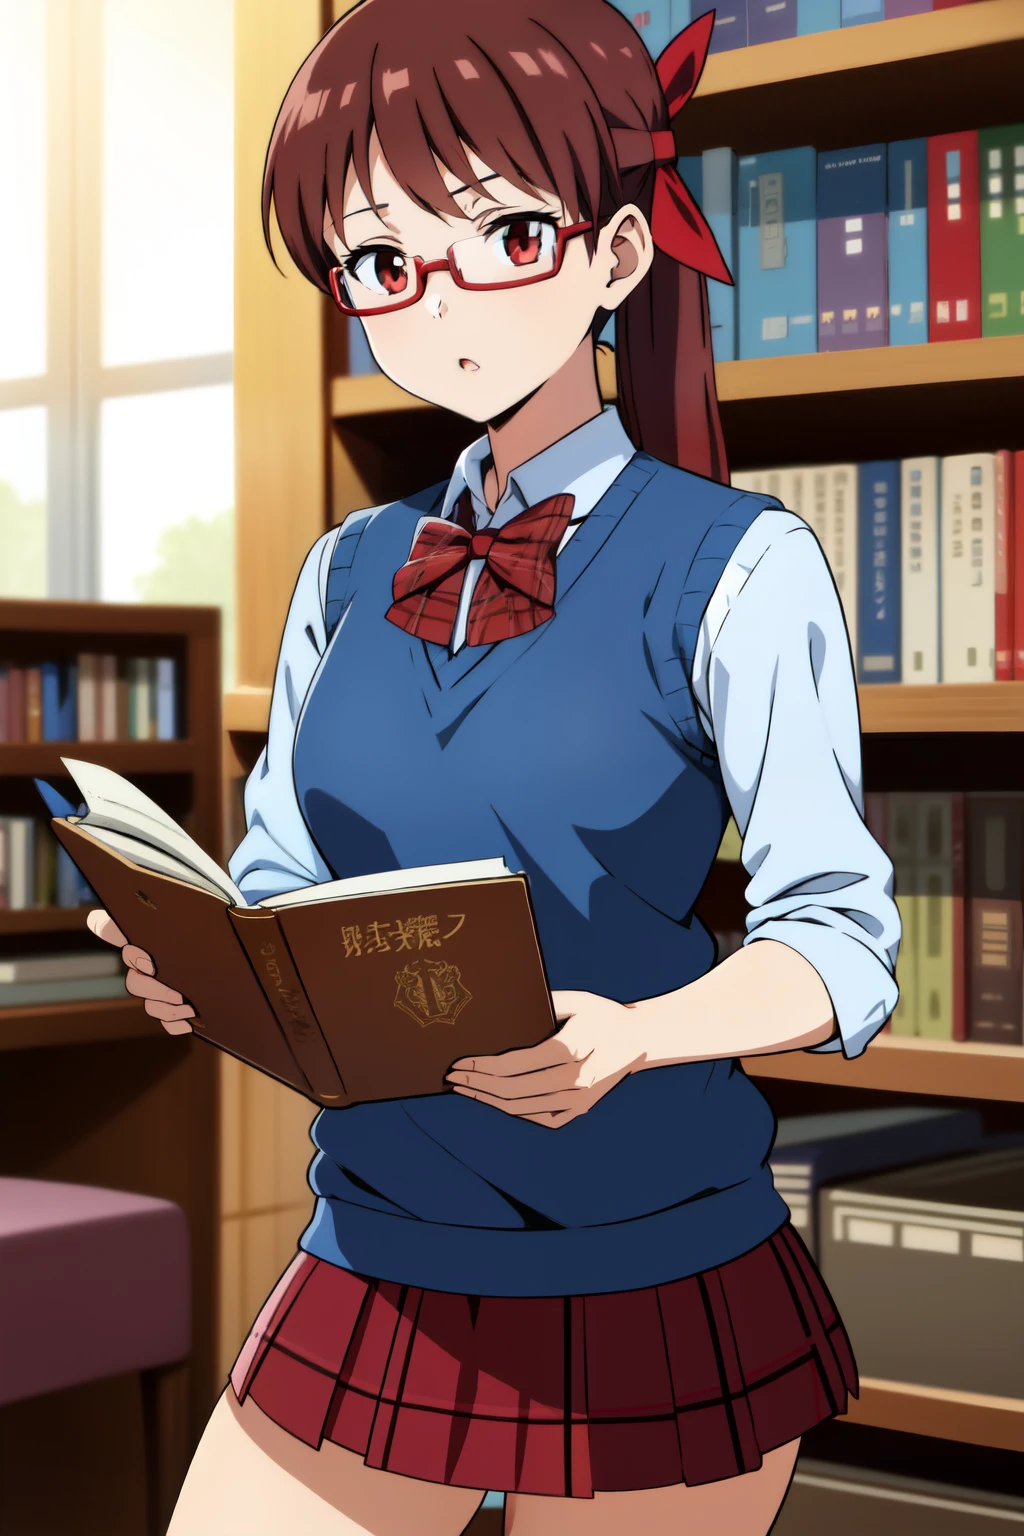 (anime)
, blue sweater vest, red bow, plaid skirt, brown skirt, miniskirt,
1girl, library, reading, studying, bookshelf, glasses